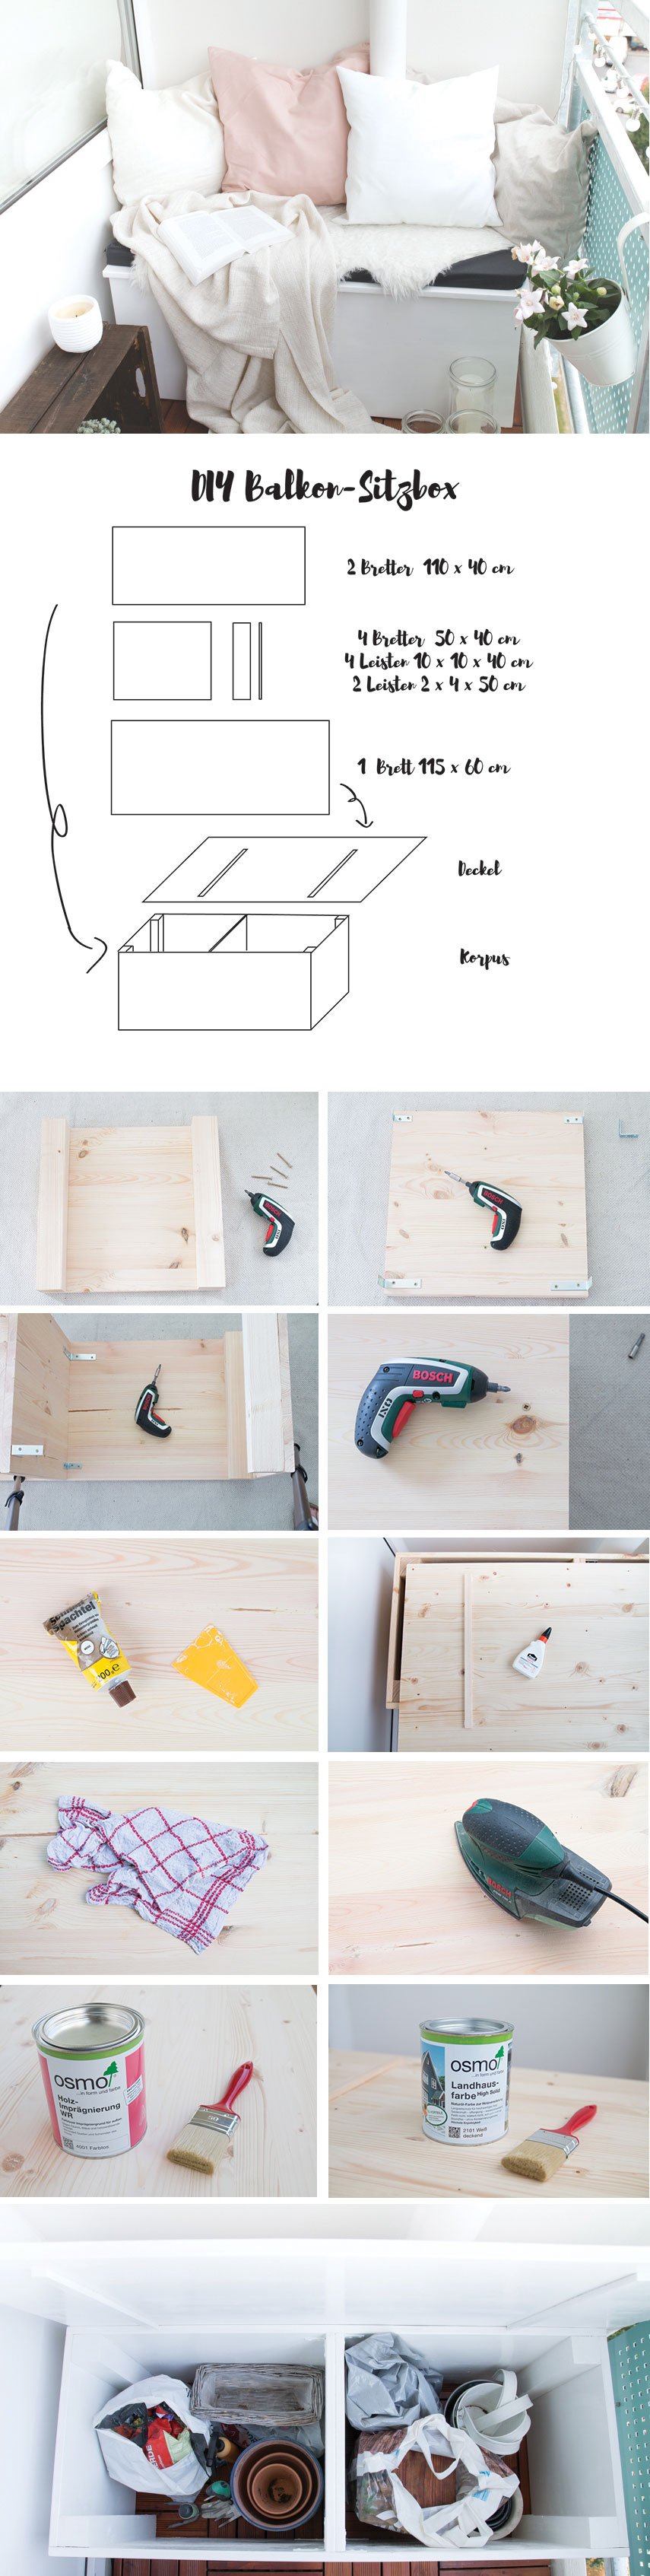 Anleitung für eine DIY Sitzbox für den Balkon - die beste Möglichkeit Platz zu schaffen und Stauraum für den Balkon zu schaffen